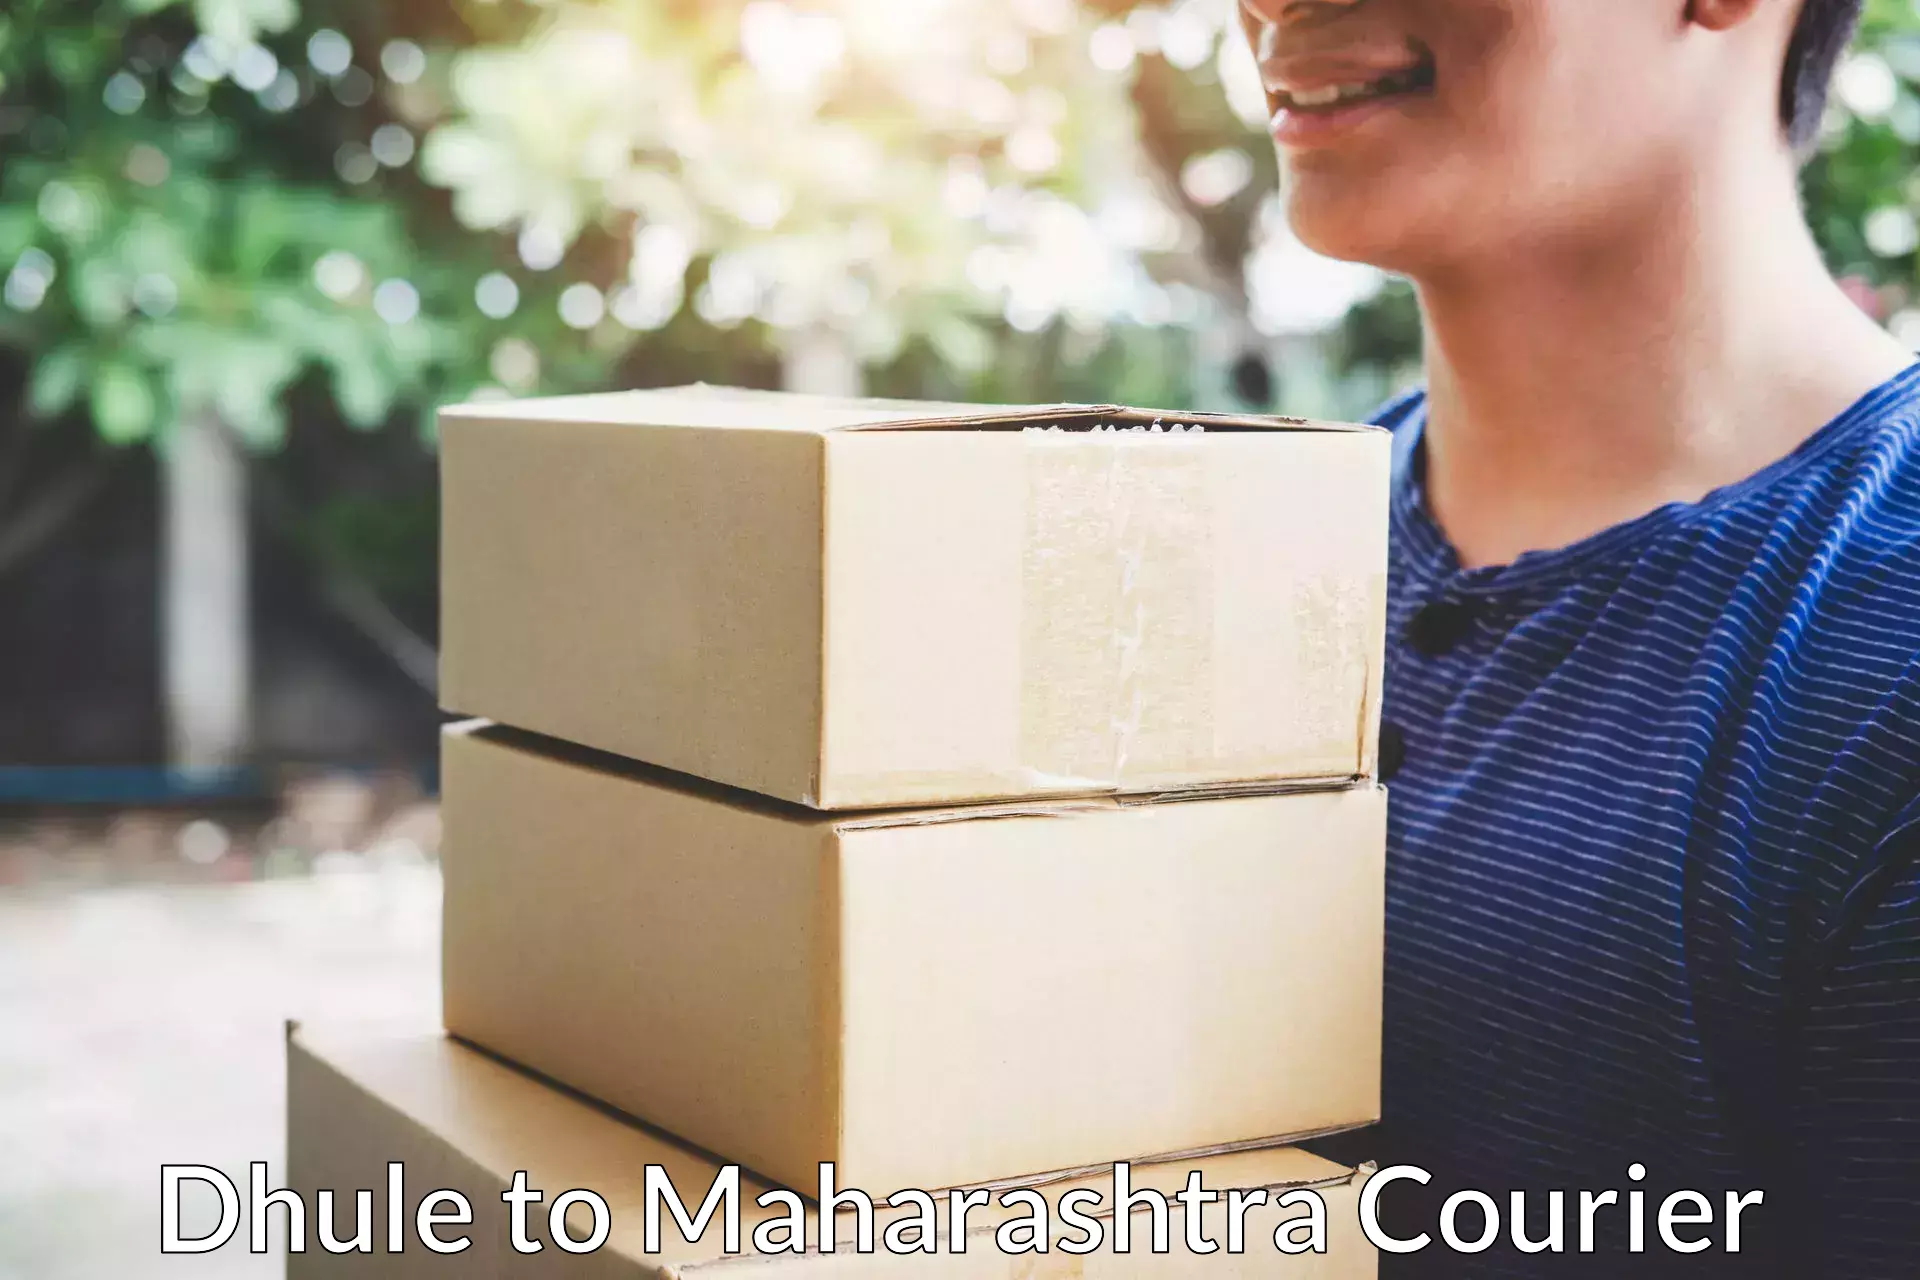 Furniture moving experts Dhule to Maharashtra